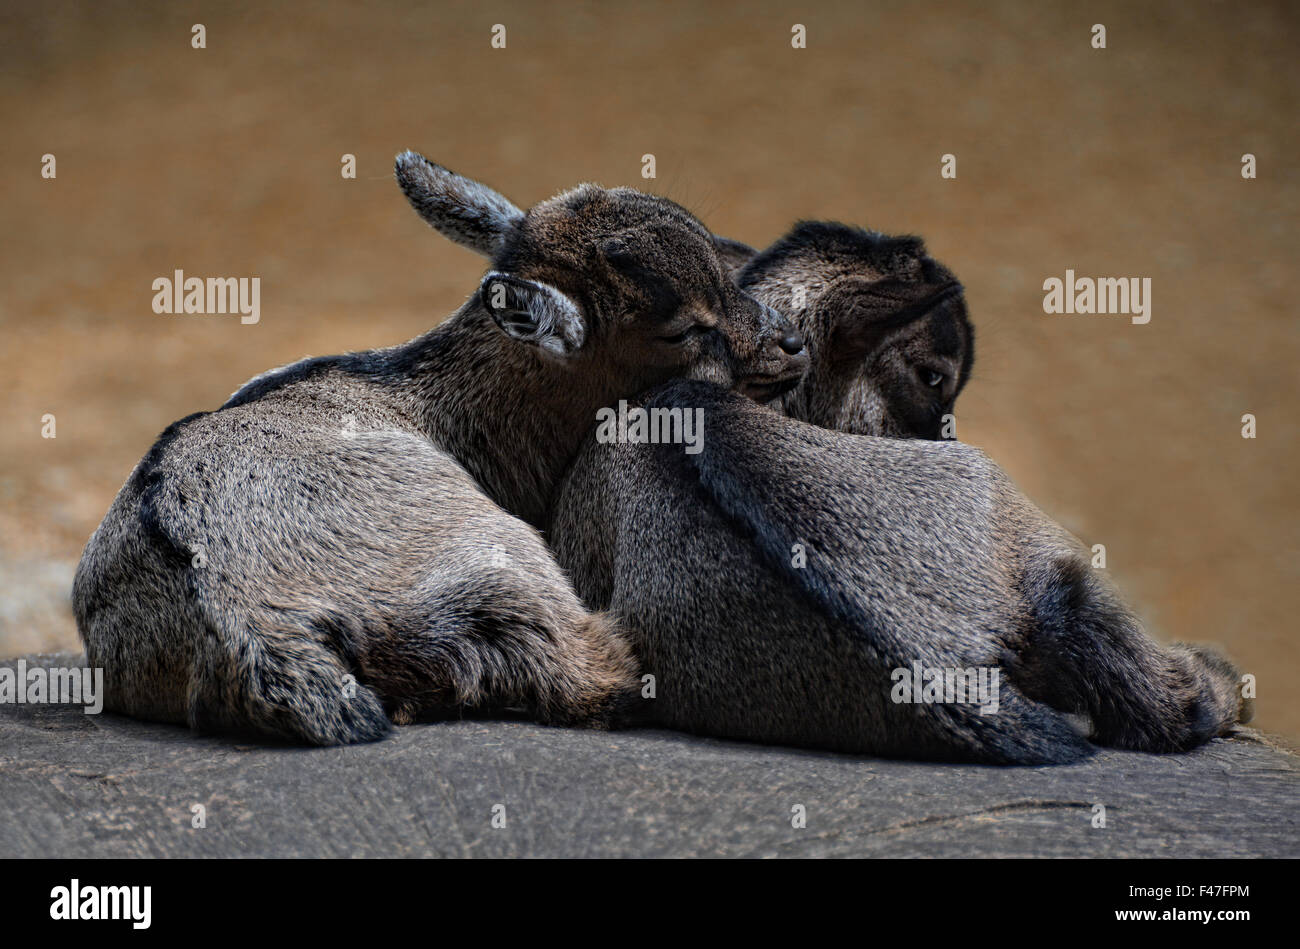 sleeping goatlings Stock Photo